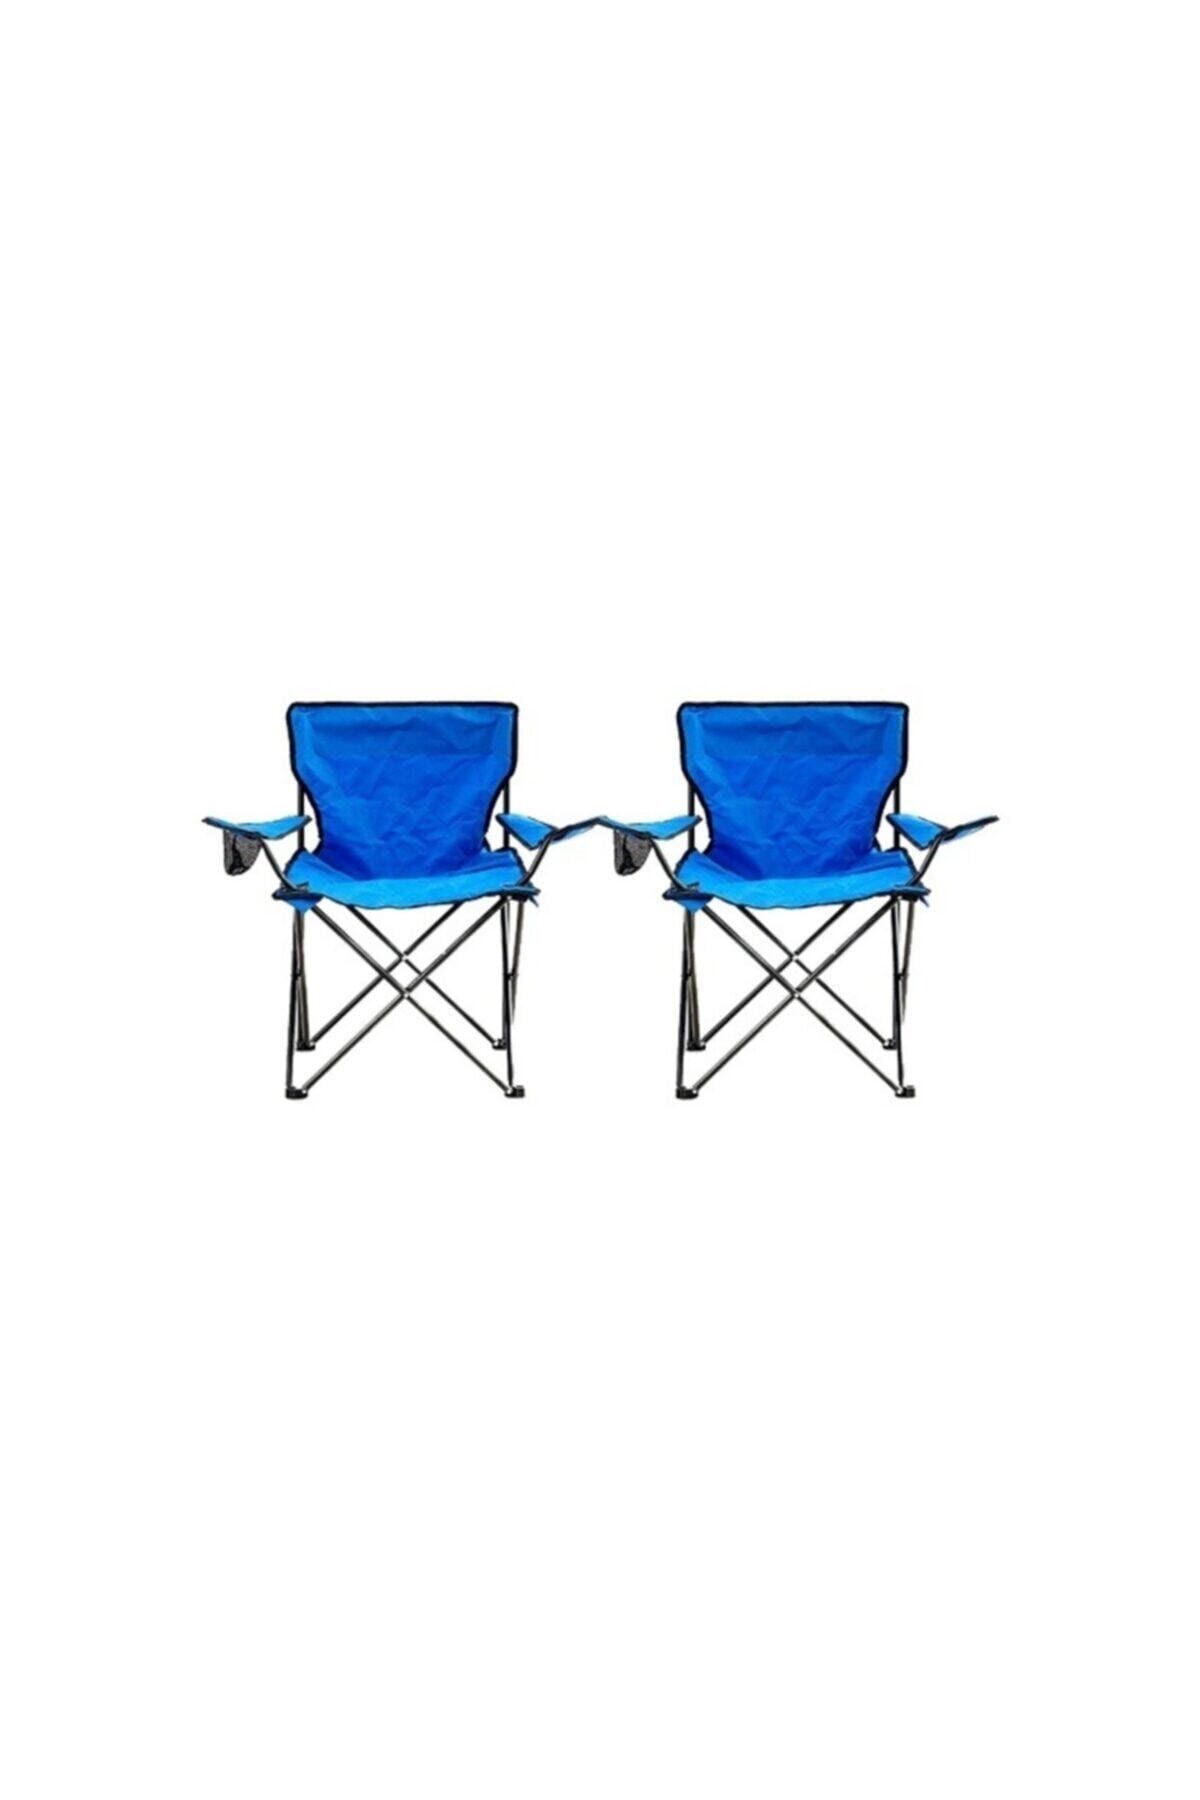 Toysan Katlanır Kamp Sandalyesi Mavi 2 Adet